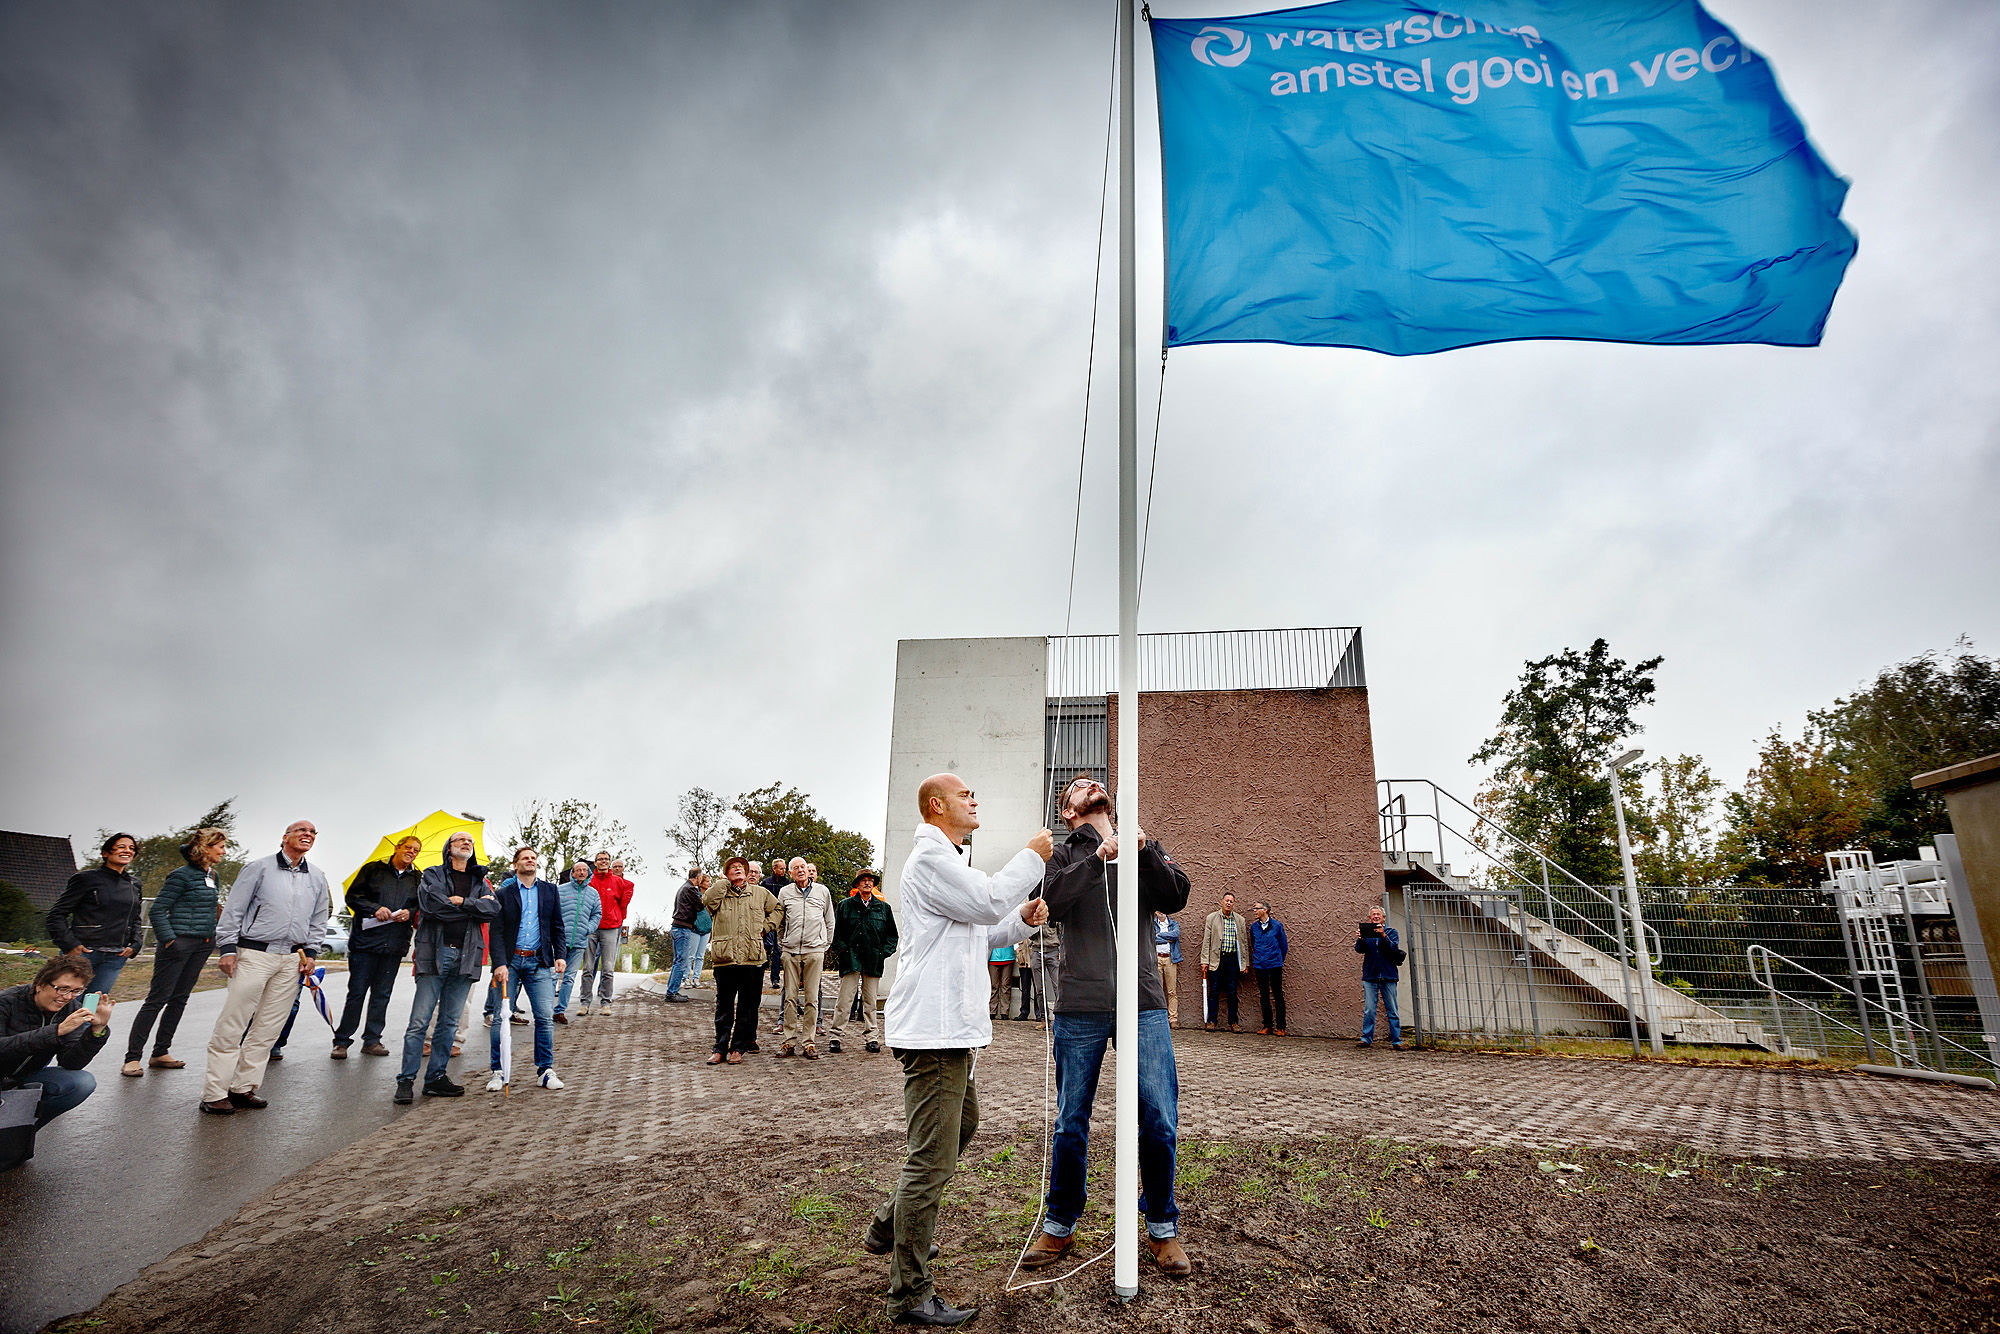 Wiegert Dulfer hijst de vlag van het Waterschap Amstel, Gooi en Vecht, en opent daarmee de visvriendelijke Dooijersluis